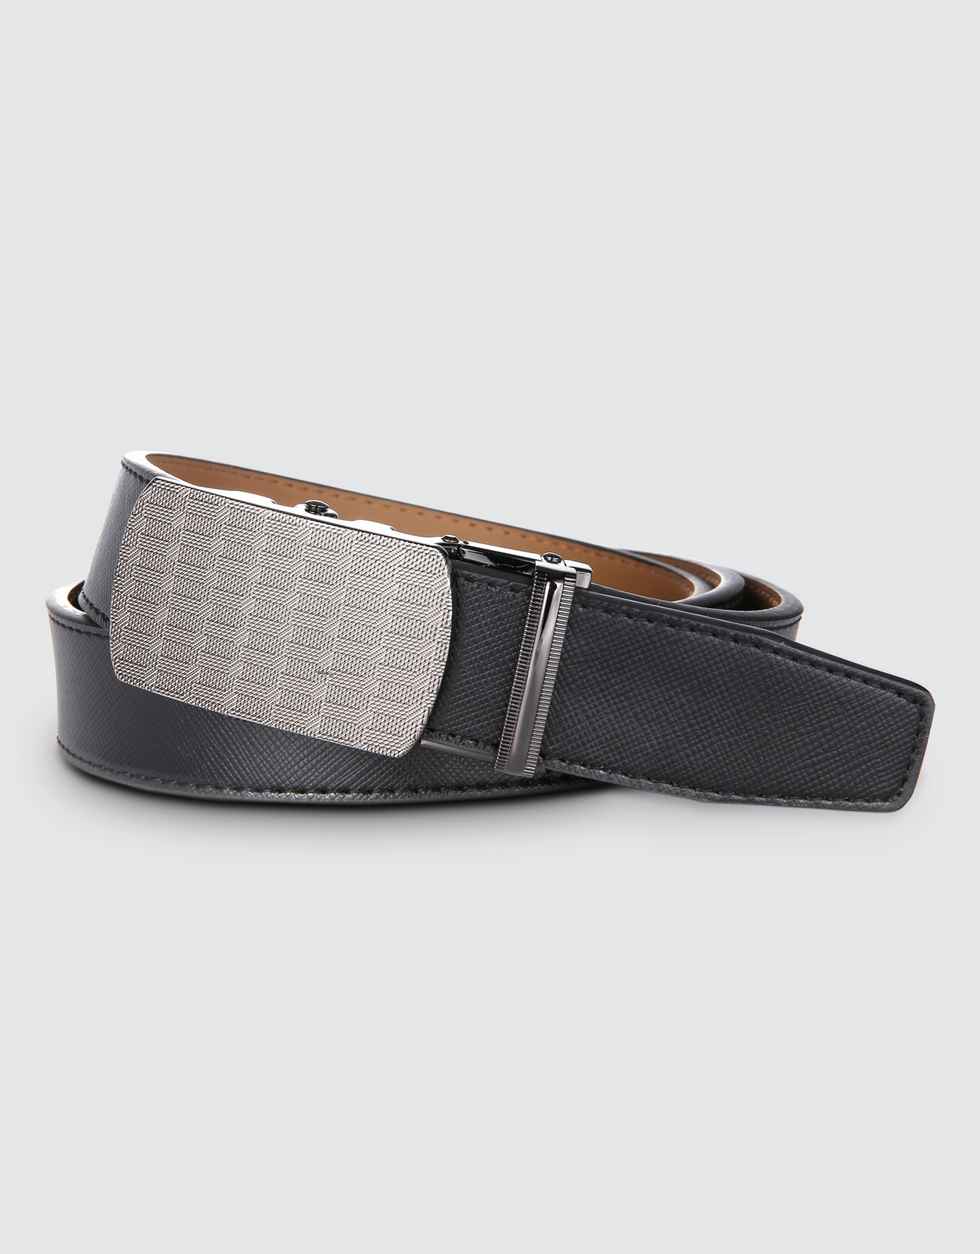 Belt Men, Ratchet Belt Dress Adjustable 1 3/8 Genuine Leather Designer Belt,  Size Length Can be Cut, with Gift Box,Single belt with Gift Box